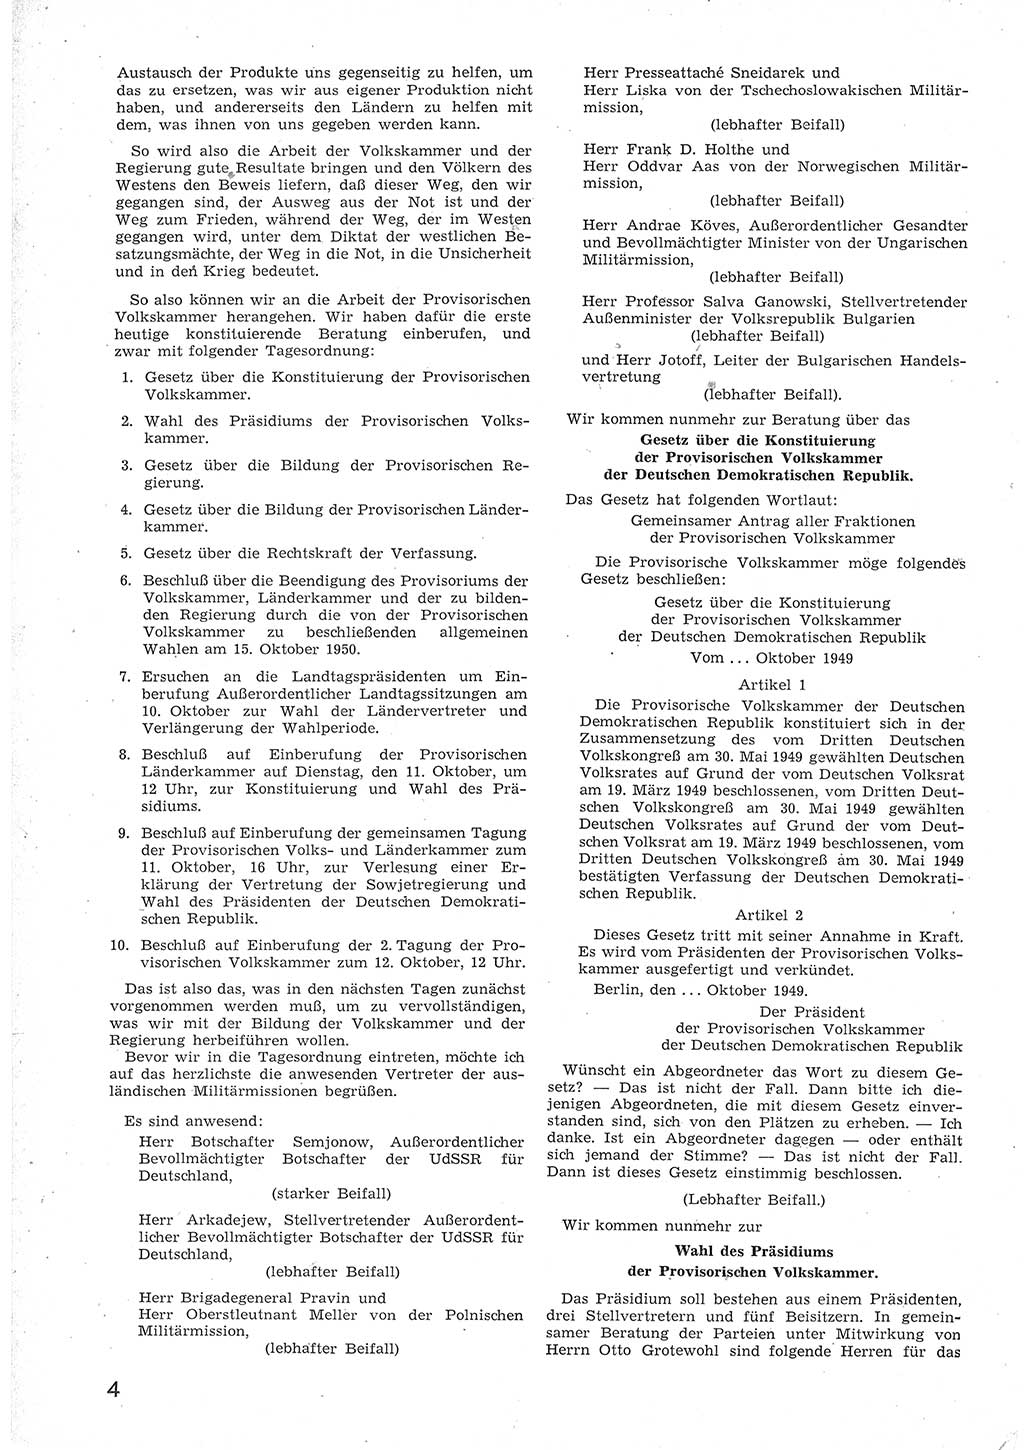 Provisorische Volkskammer (VK) der Deutschen Demokratischen Republik (DDR) 1949-1950, Dokument 16 (Prov. VK DDR 1949-1950, Dok. 16)